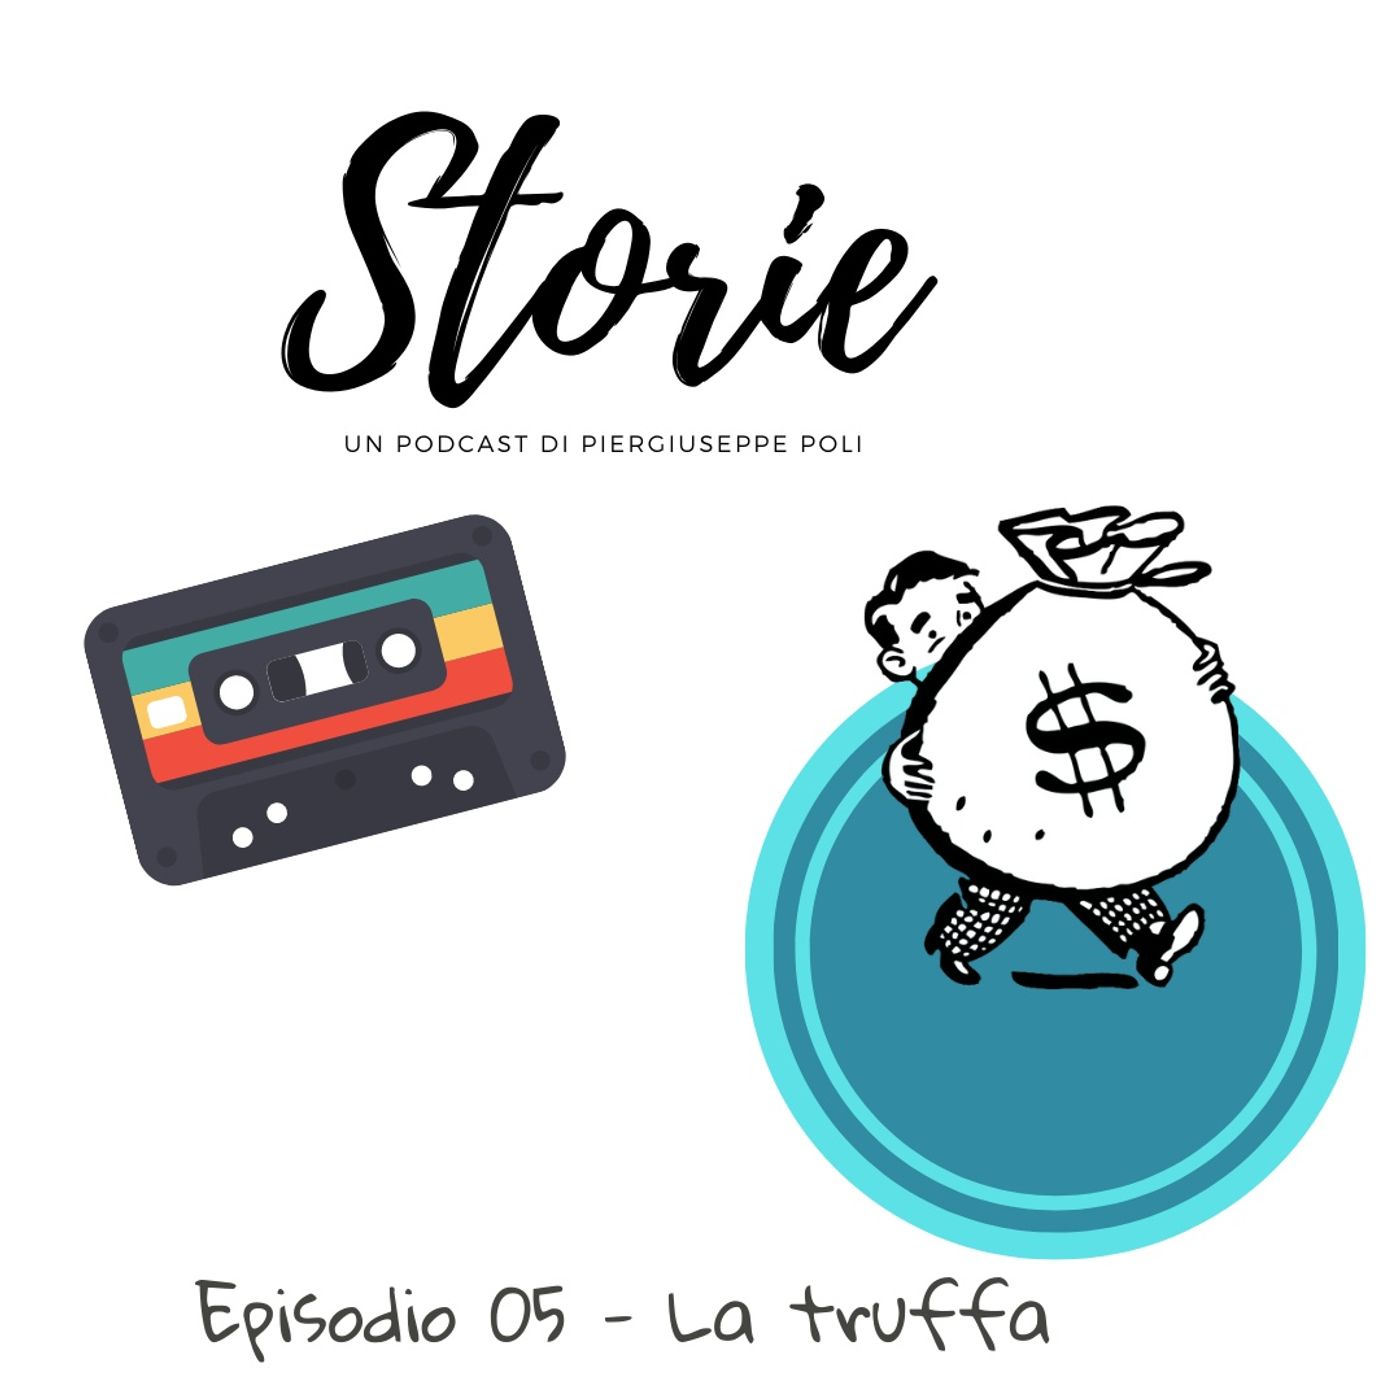 Storie - Episodio 05 - La truffa